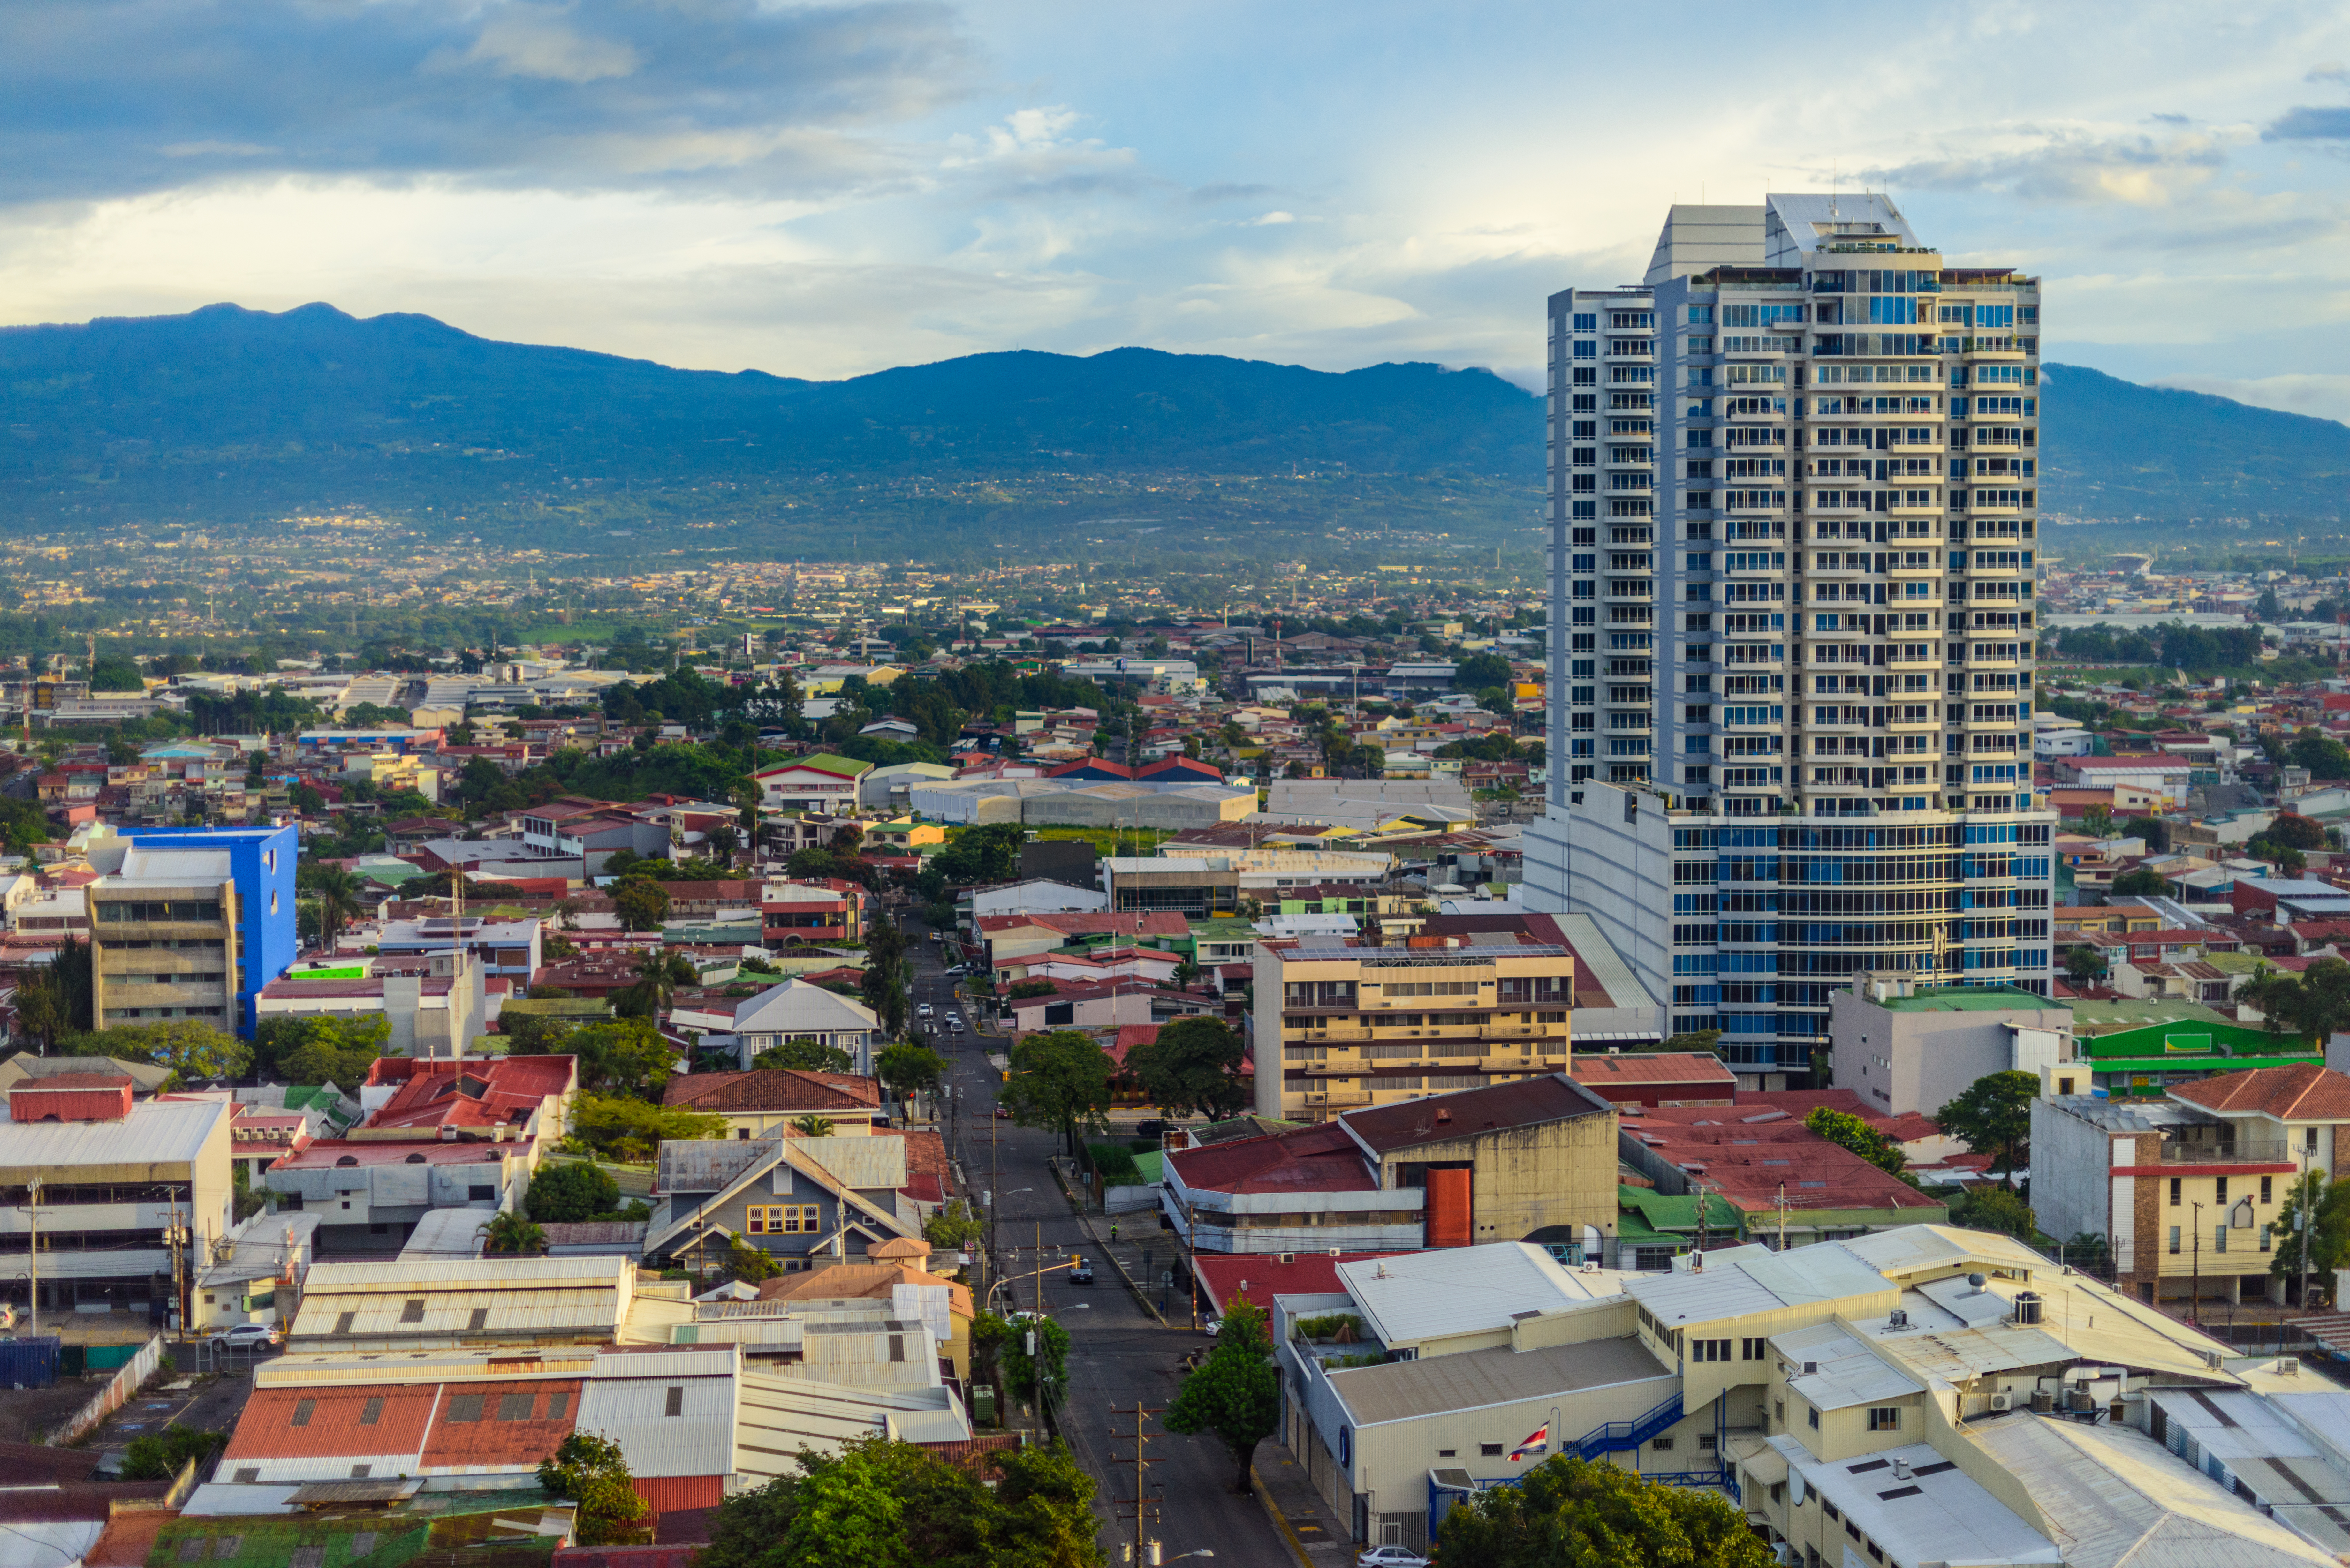 Imagen aérea de San José, Costa Rica (Shutterstock)